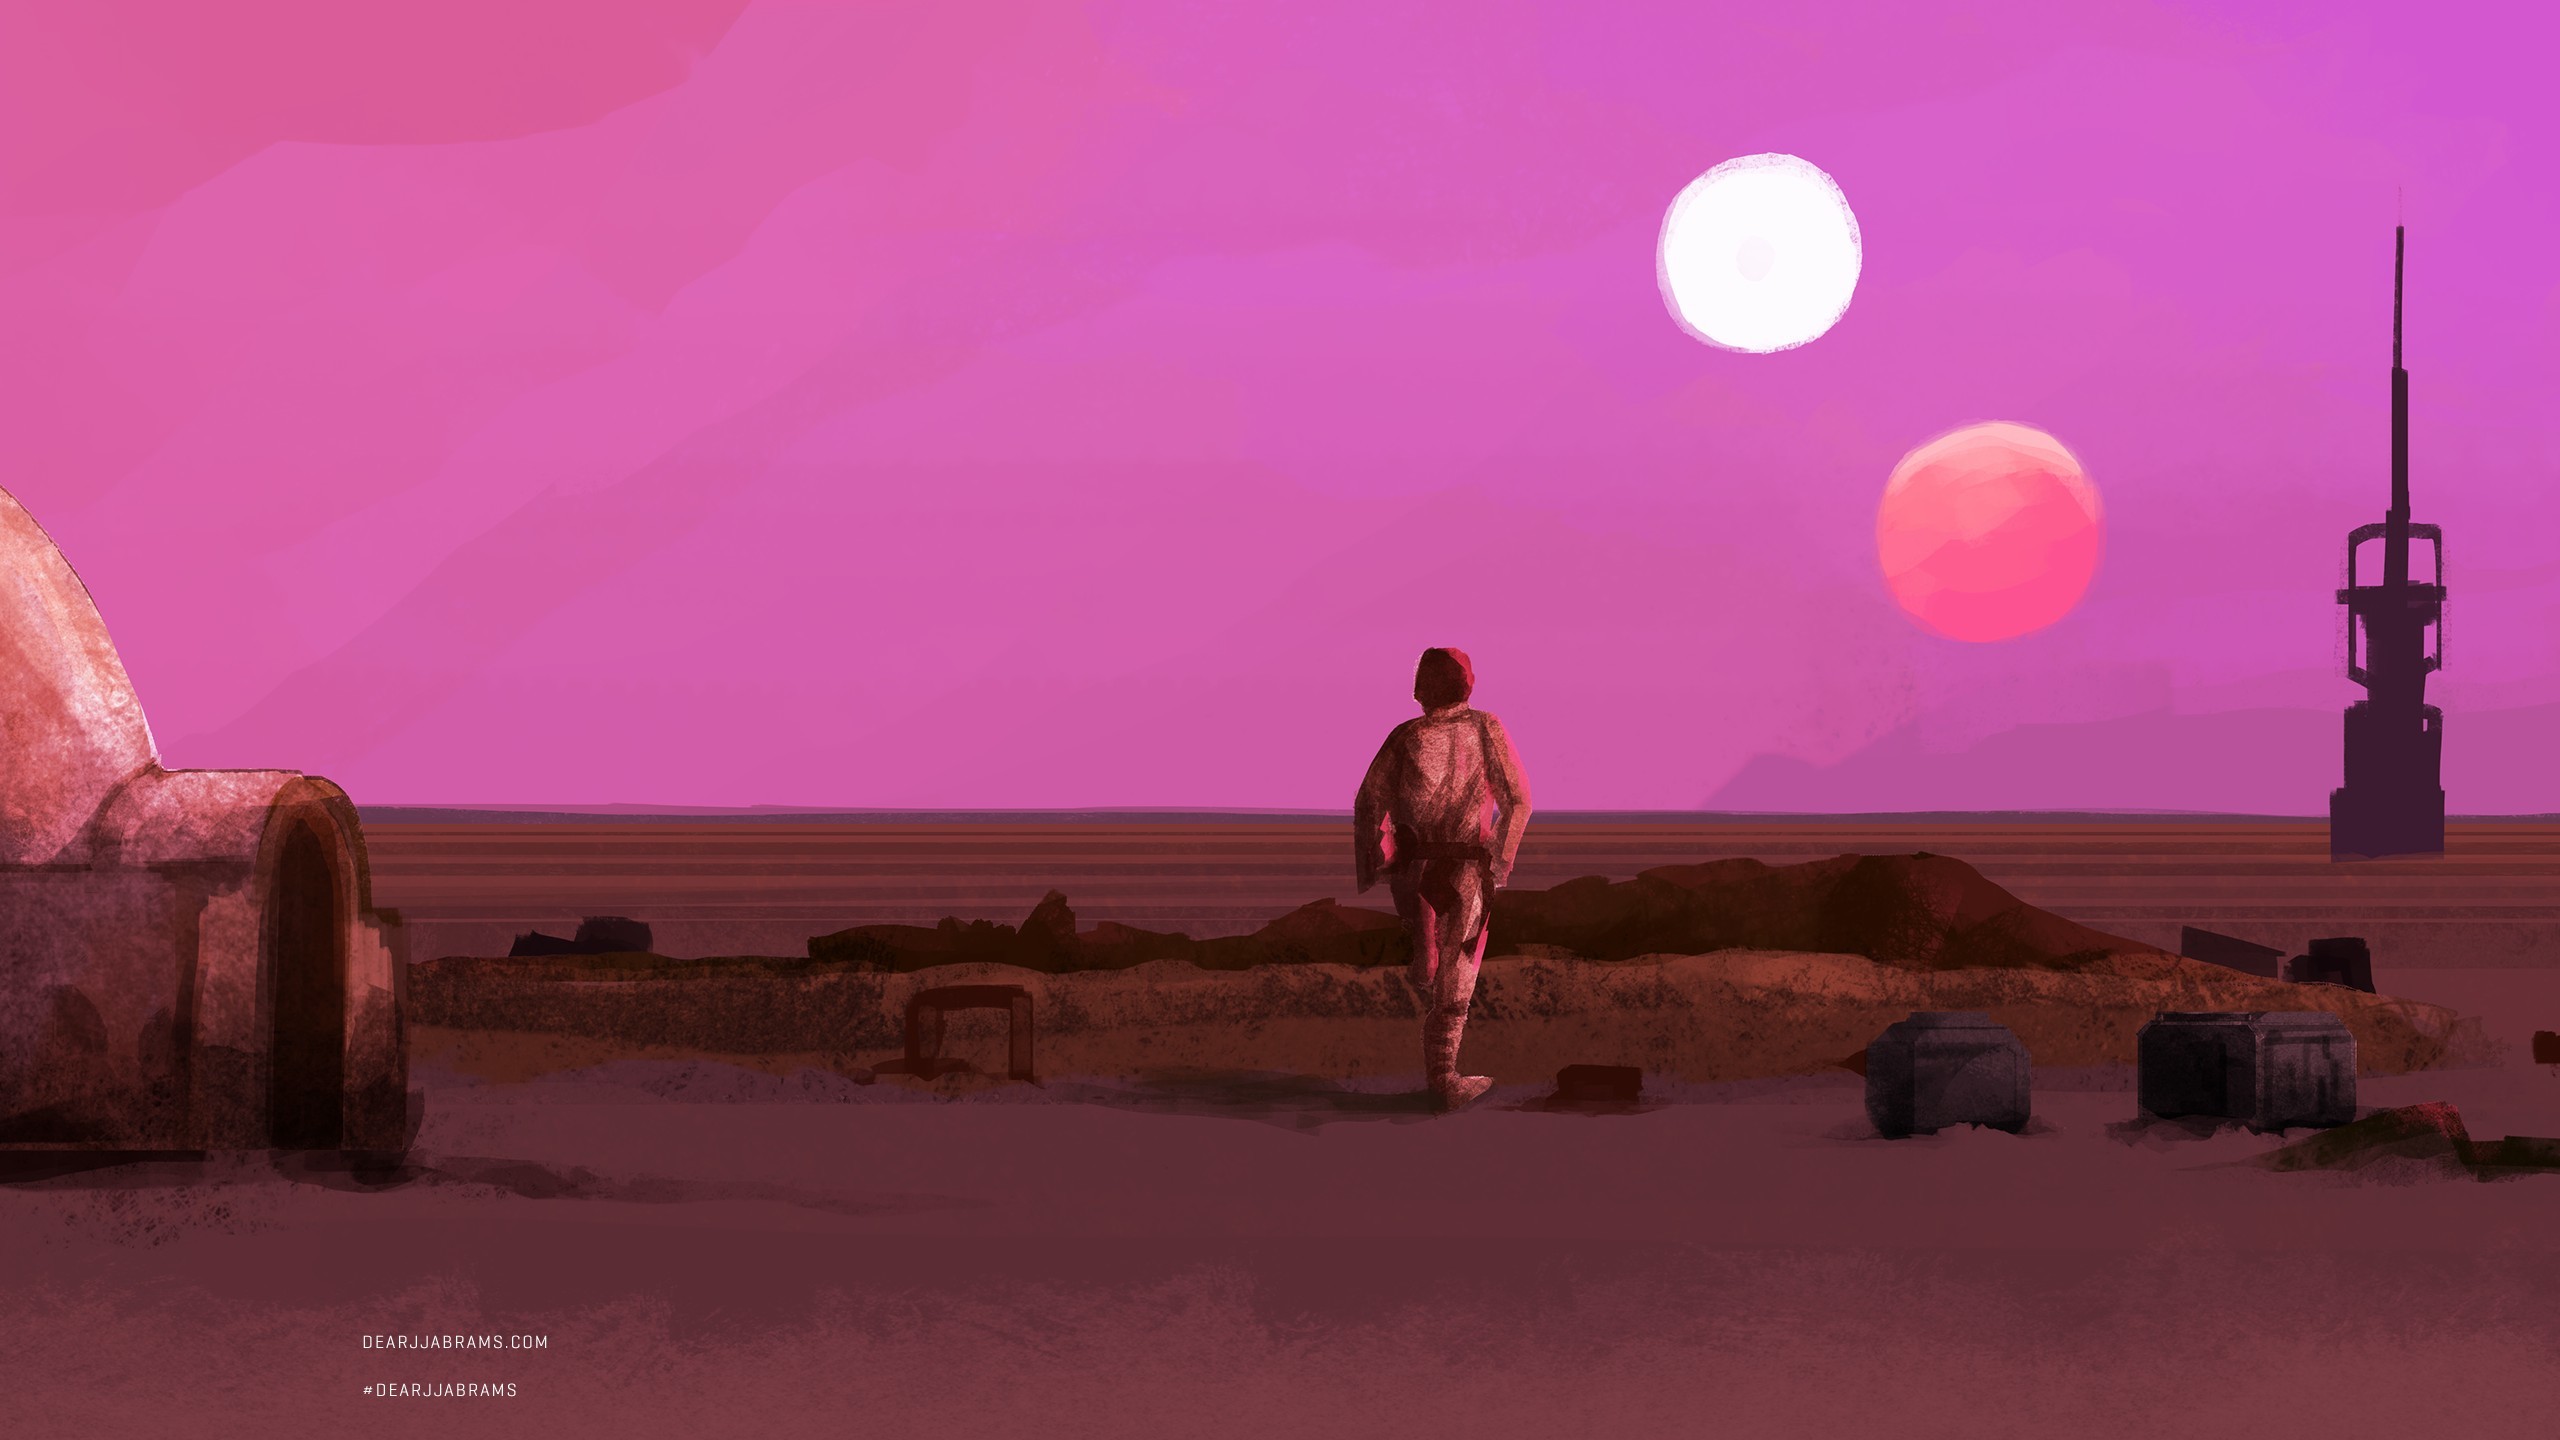 Star Wars Wallpaper Tatooine - HD Wallpaper 